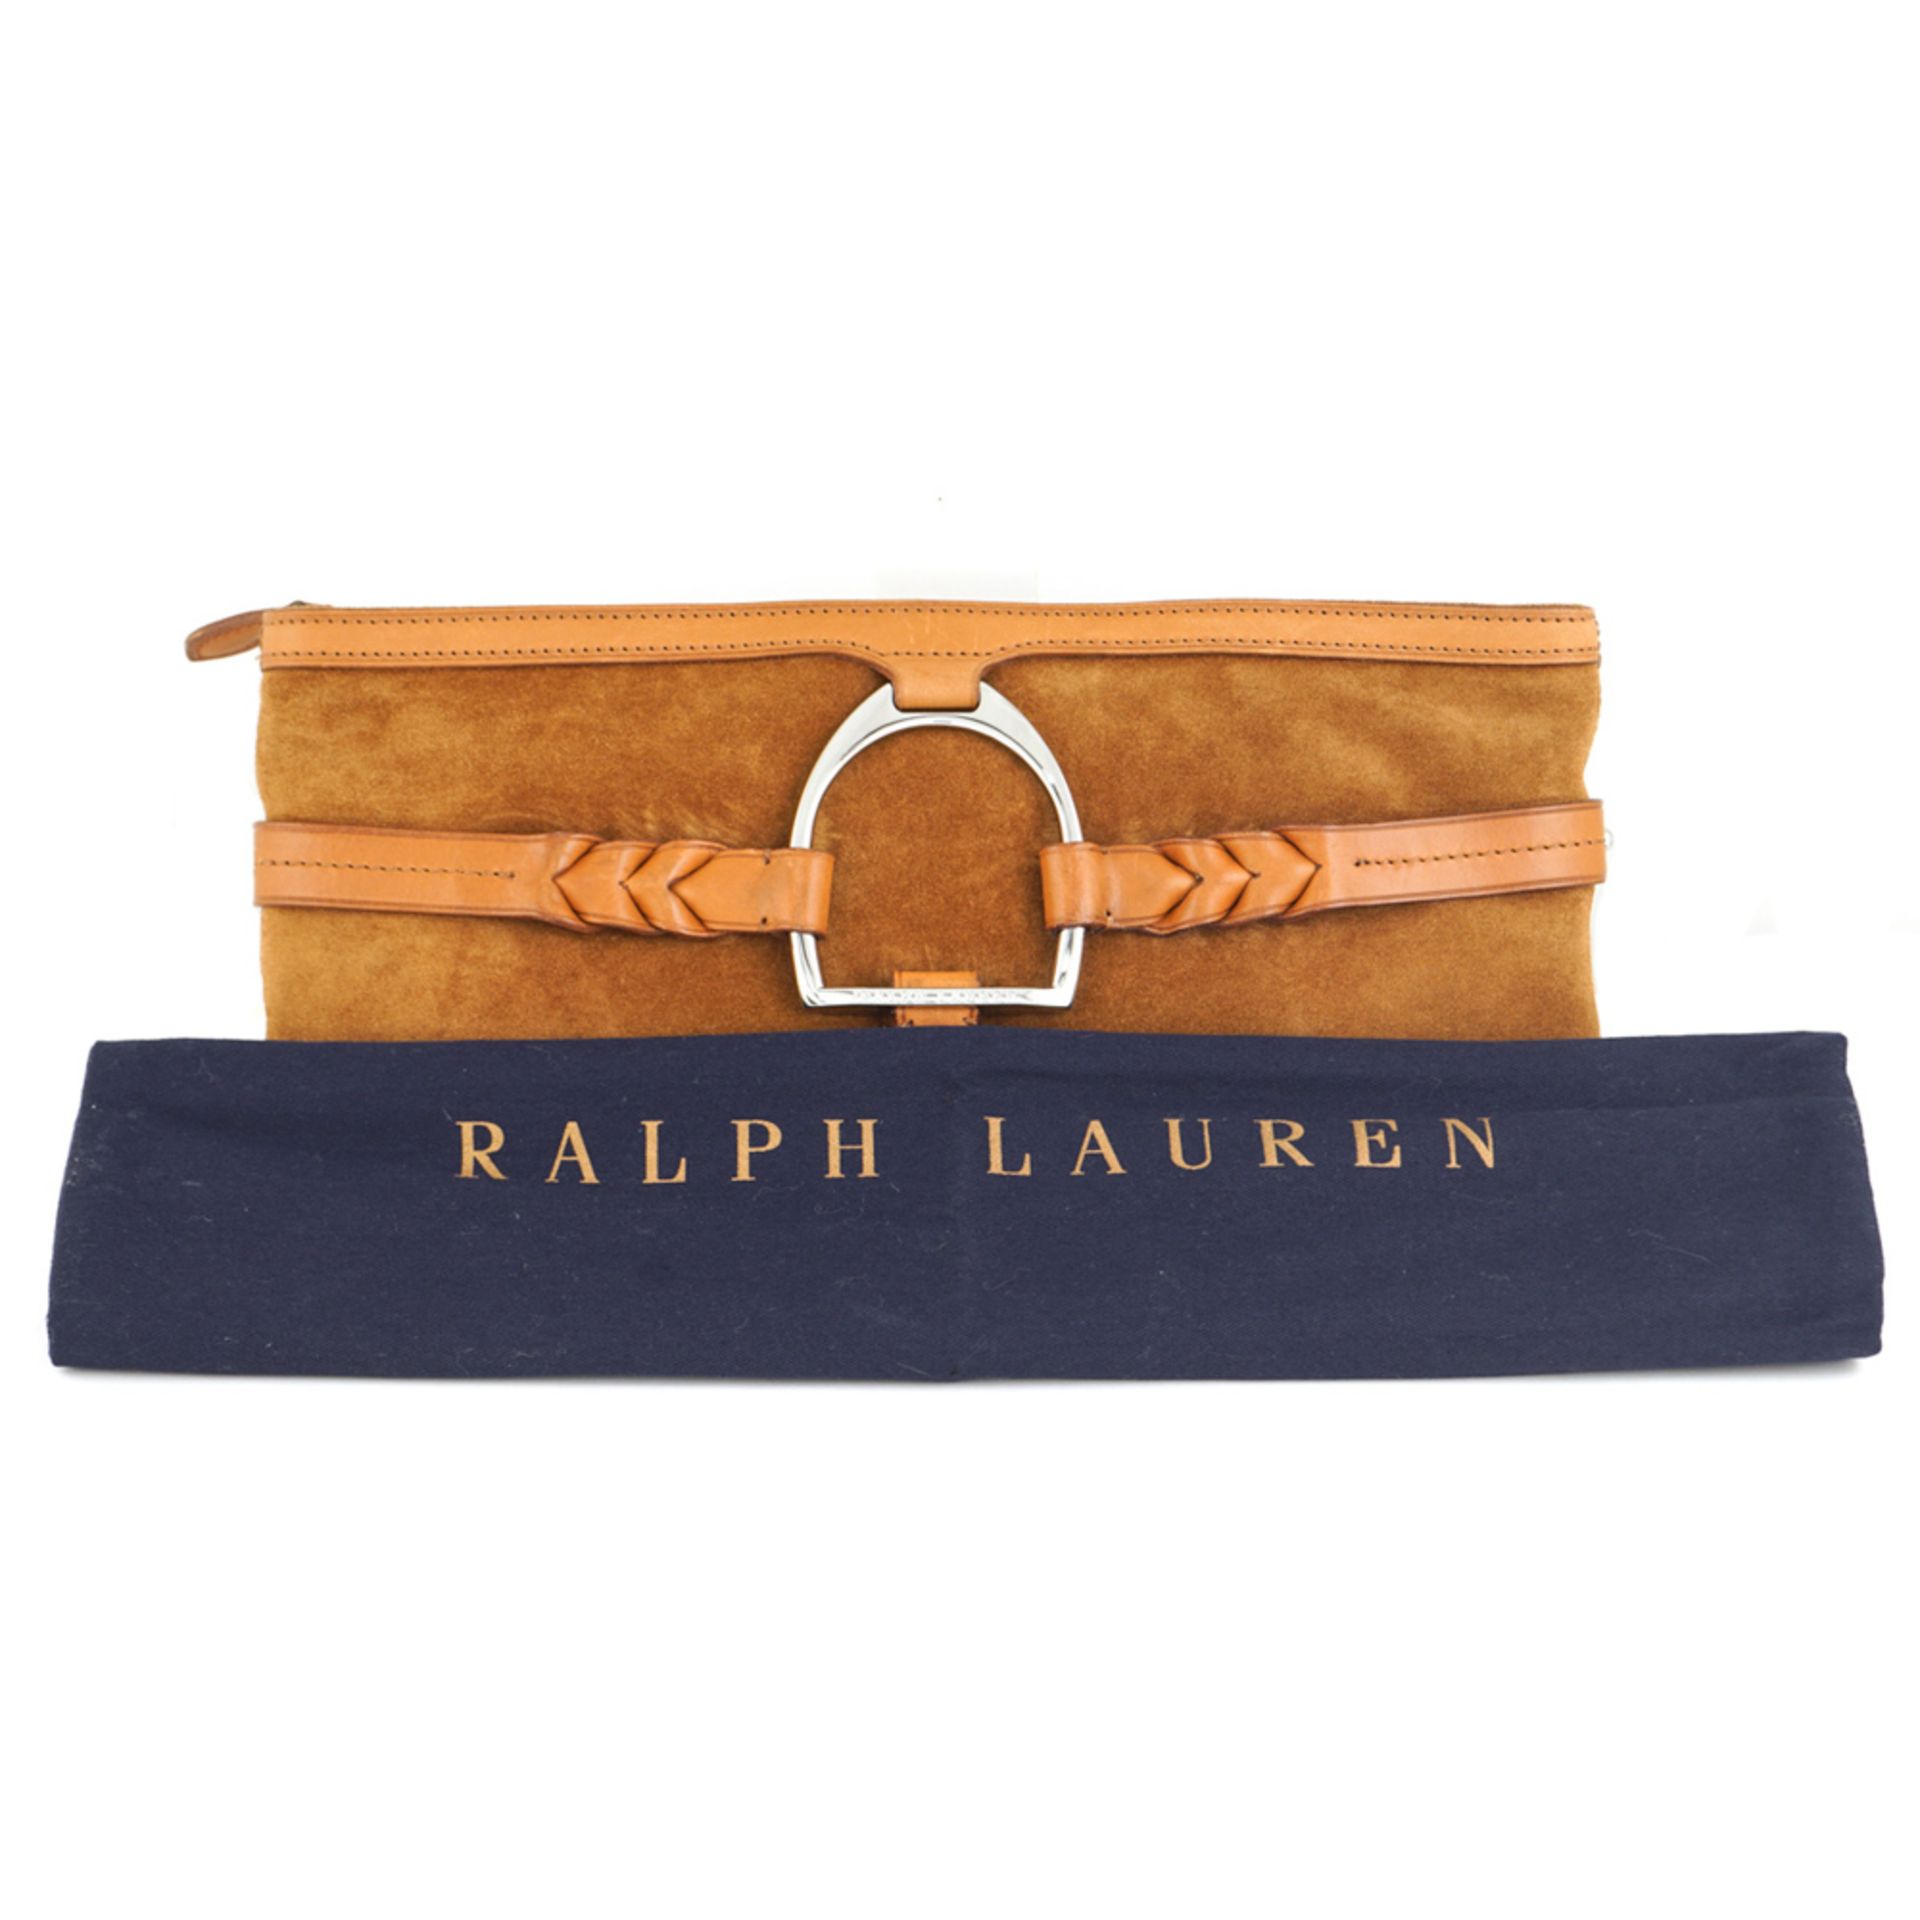 Ralph Lauren, stirrup collection vintage clutch pochette 32x15 cm. - Bild 5 aus 5